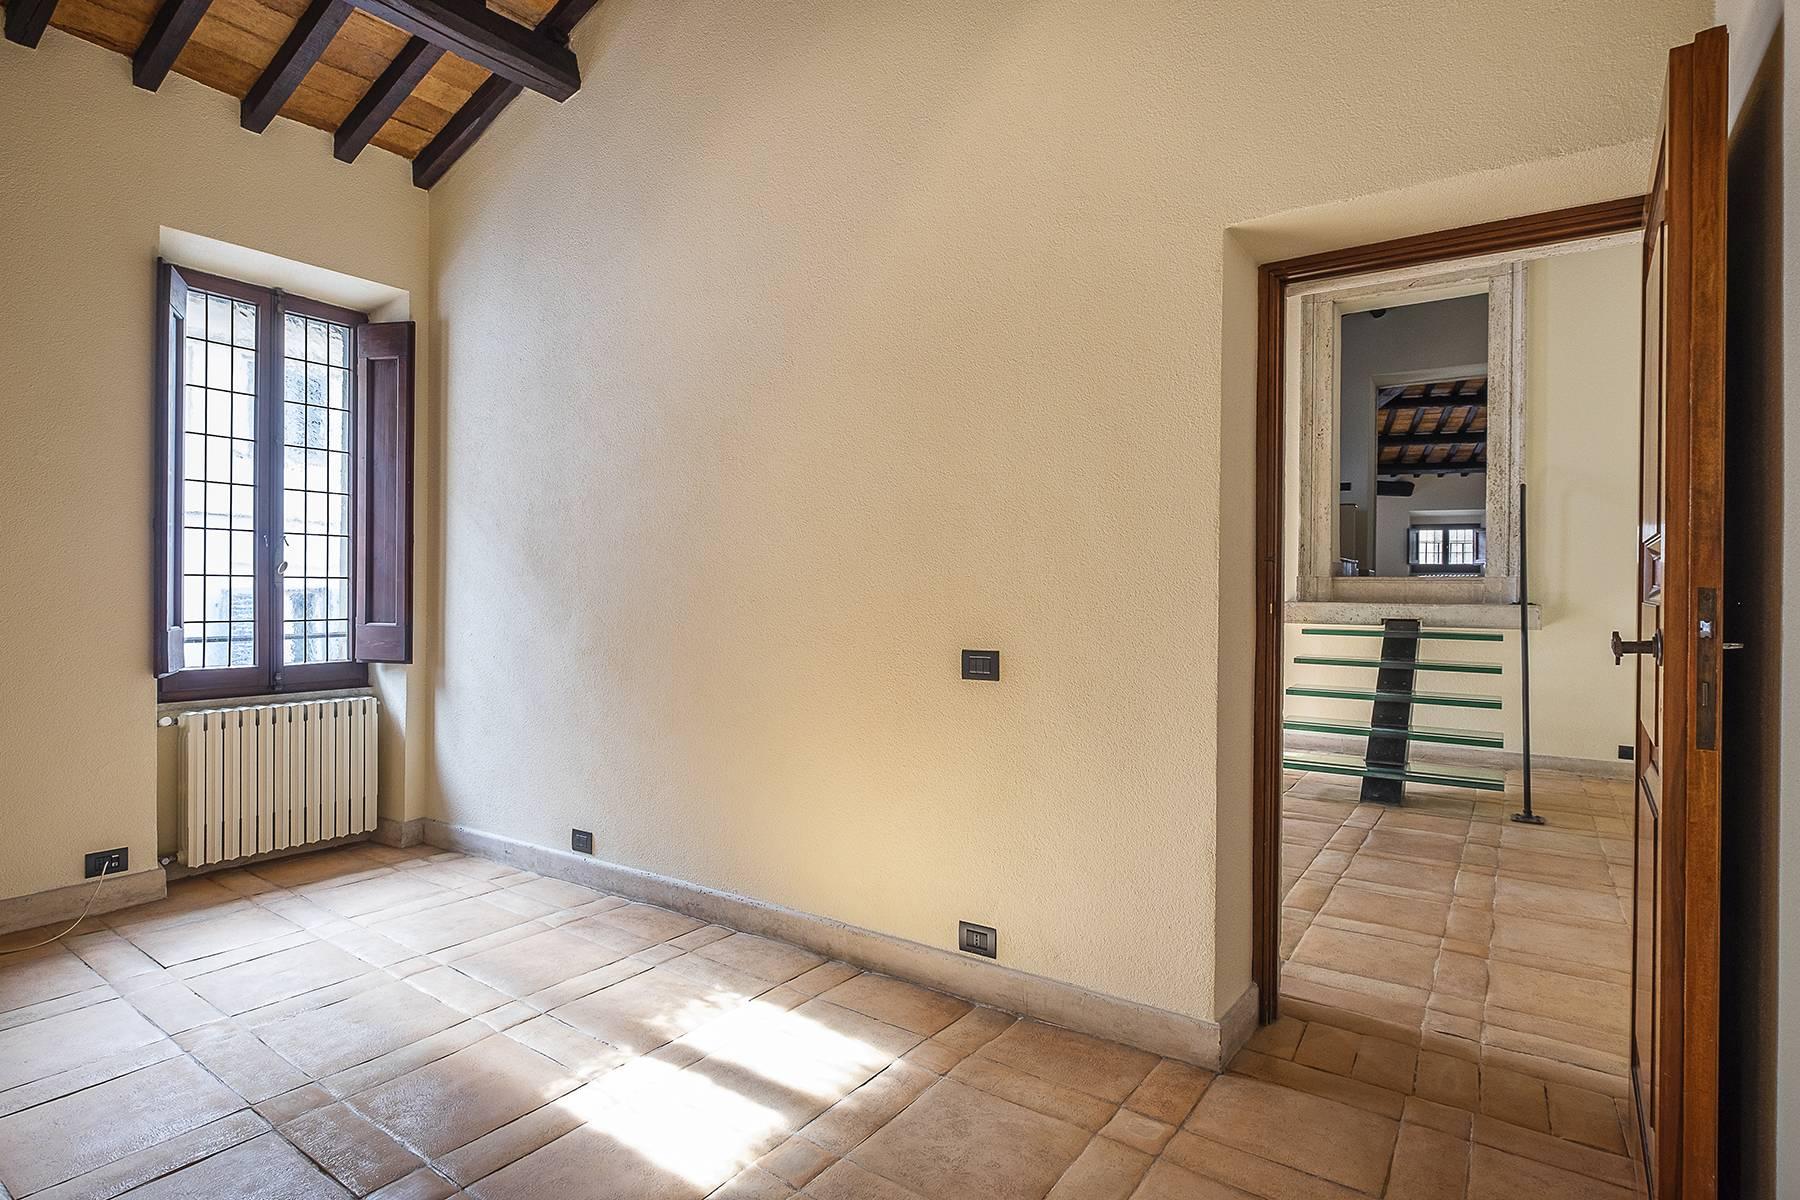 Esclusivo appartamento in centro storico con vista sui tetti di Roma - 4